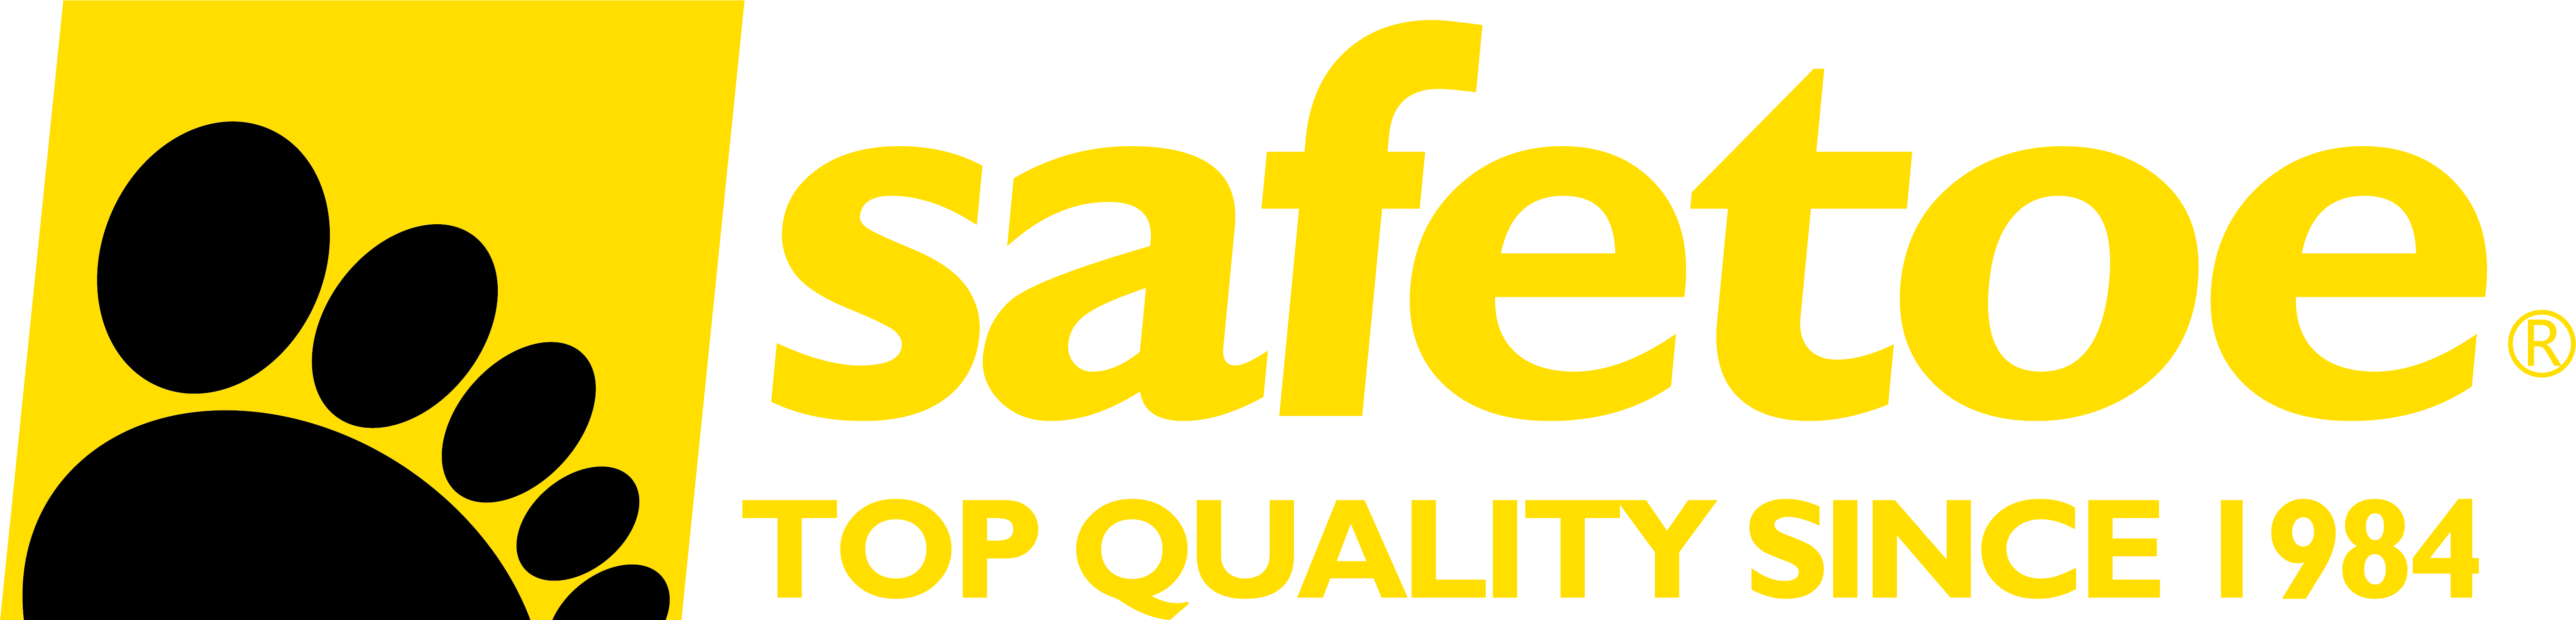 Логотип Safetoe